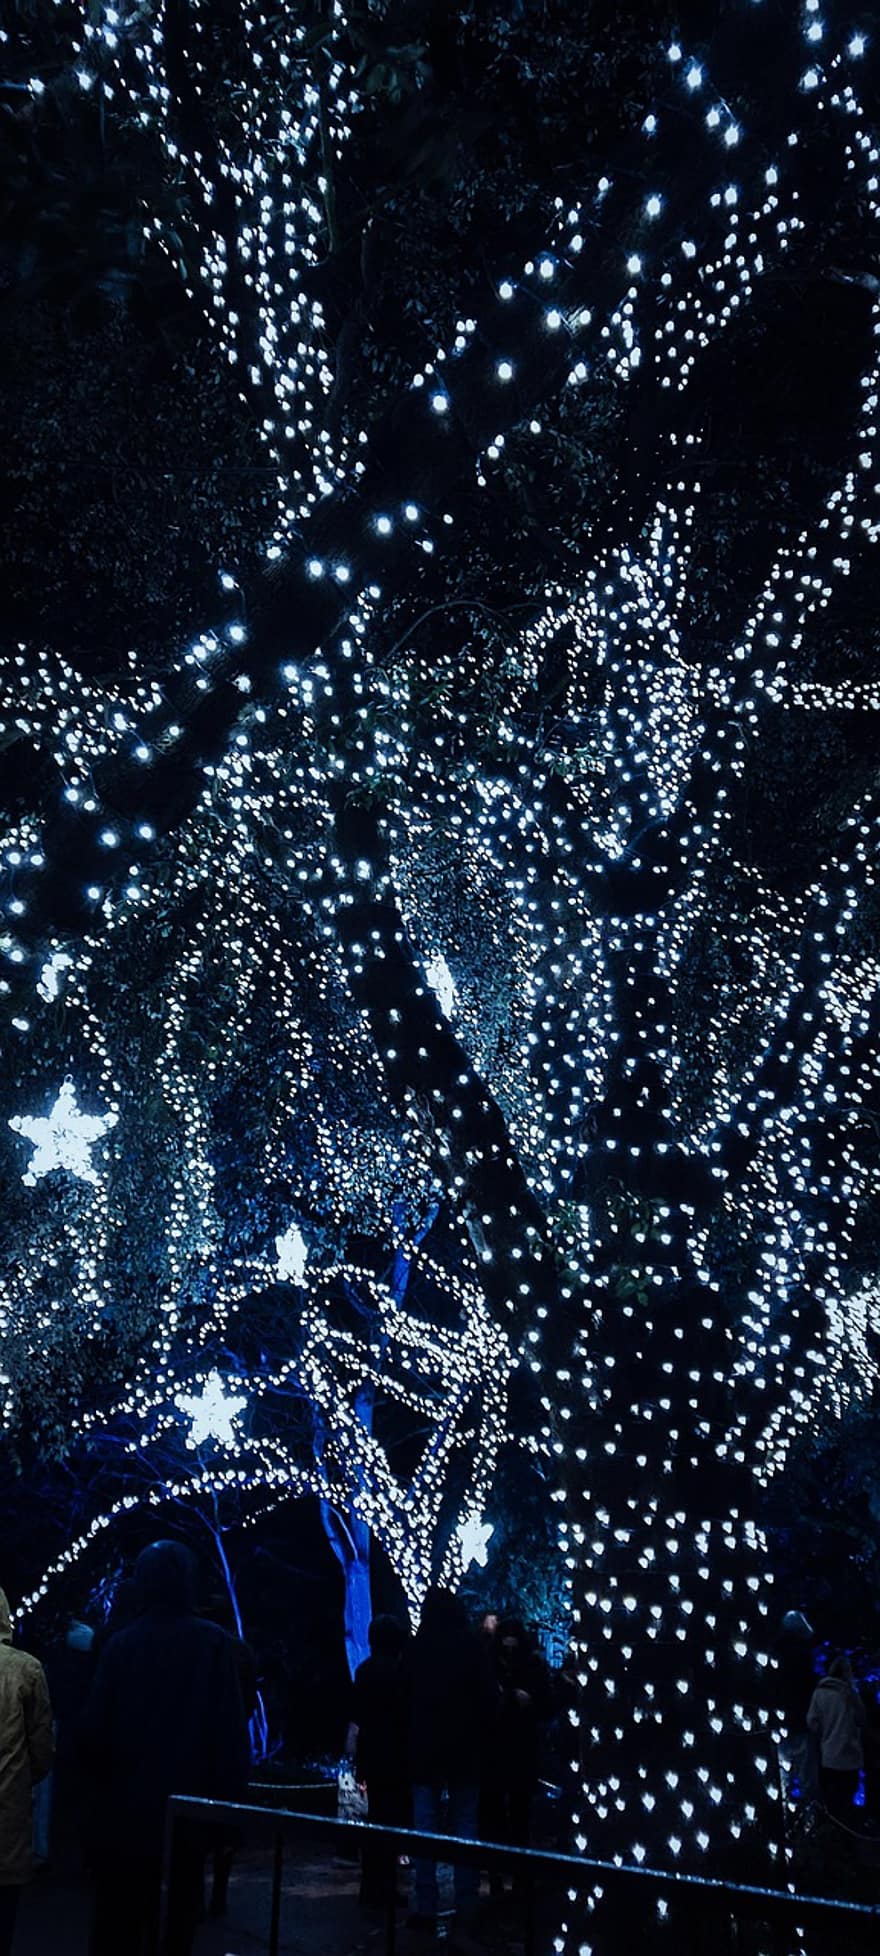 strom, víla světla, svítí, vánoční osvětlení, hvězd, vánoční hvězdy, záře, řeřavý, zářící světla, vánoční dekorace, noc